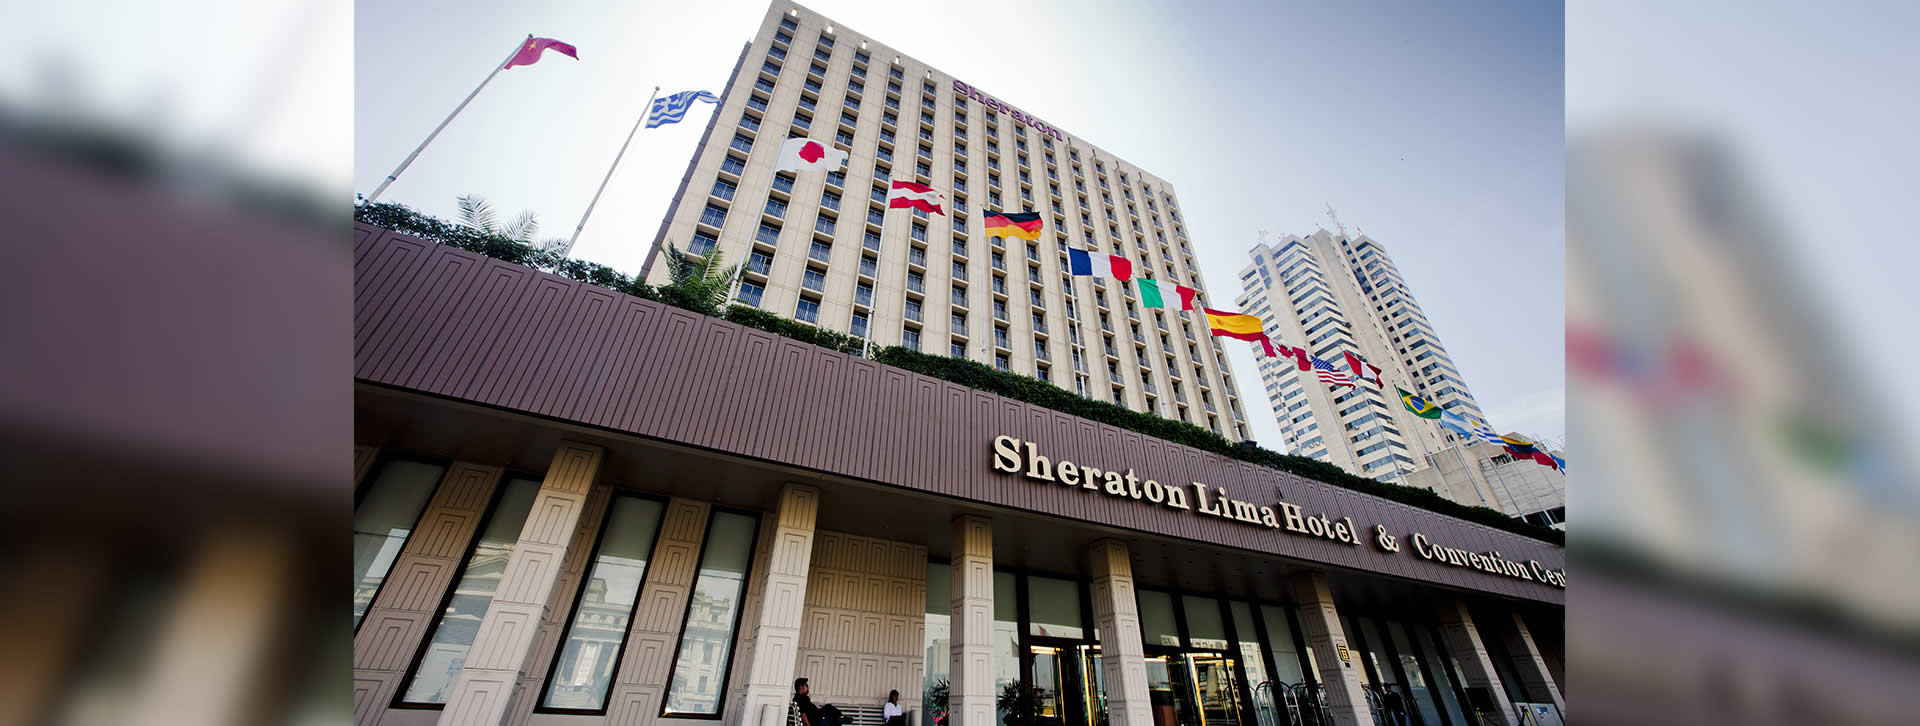 Morelco: Hotel Sheraton en Lima, Perú